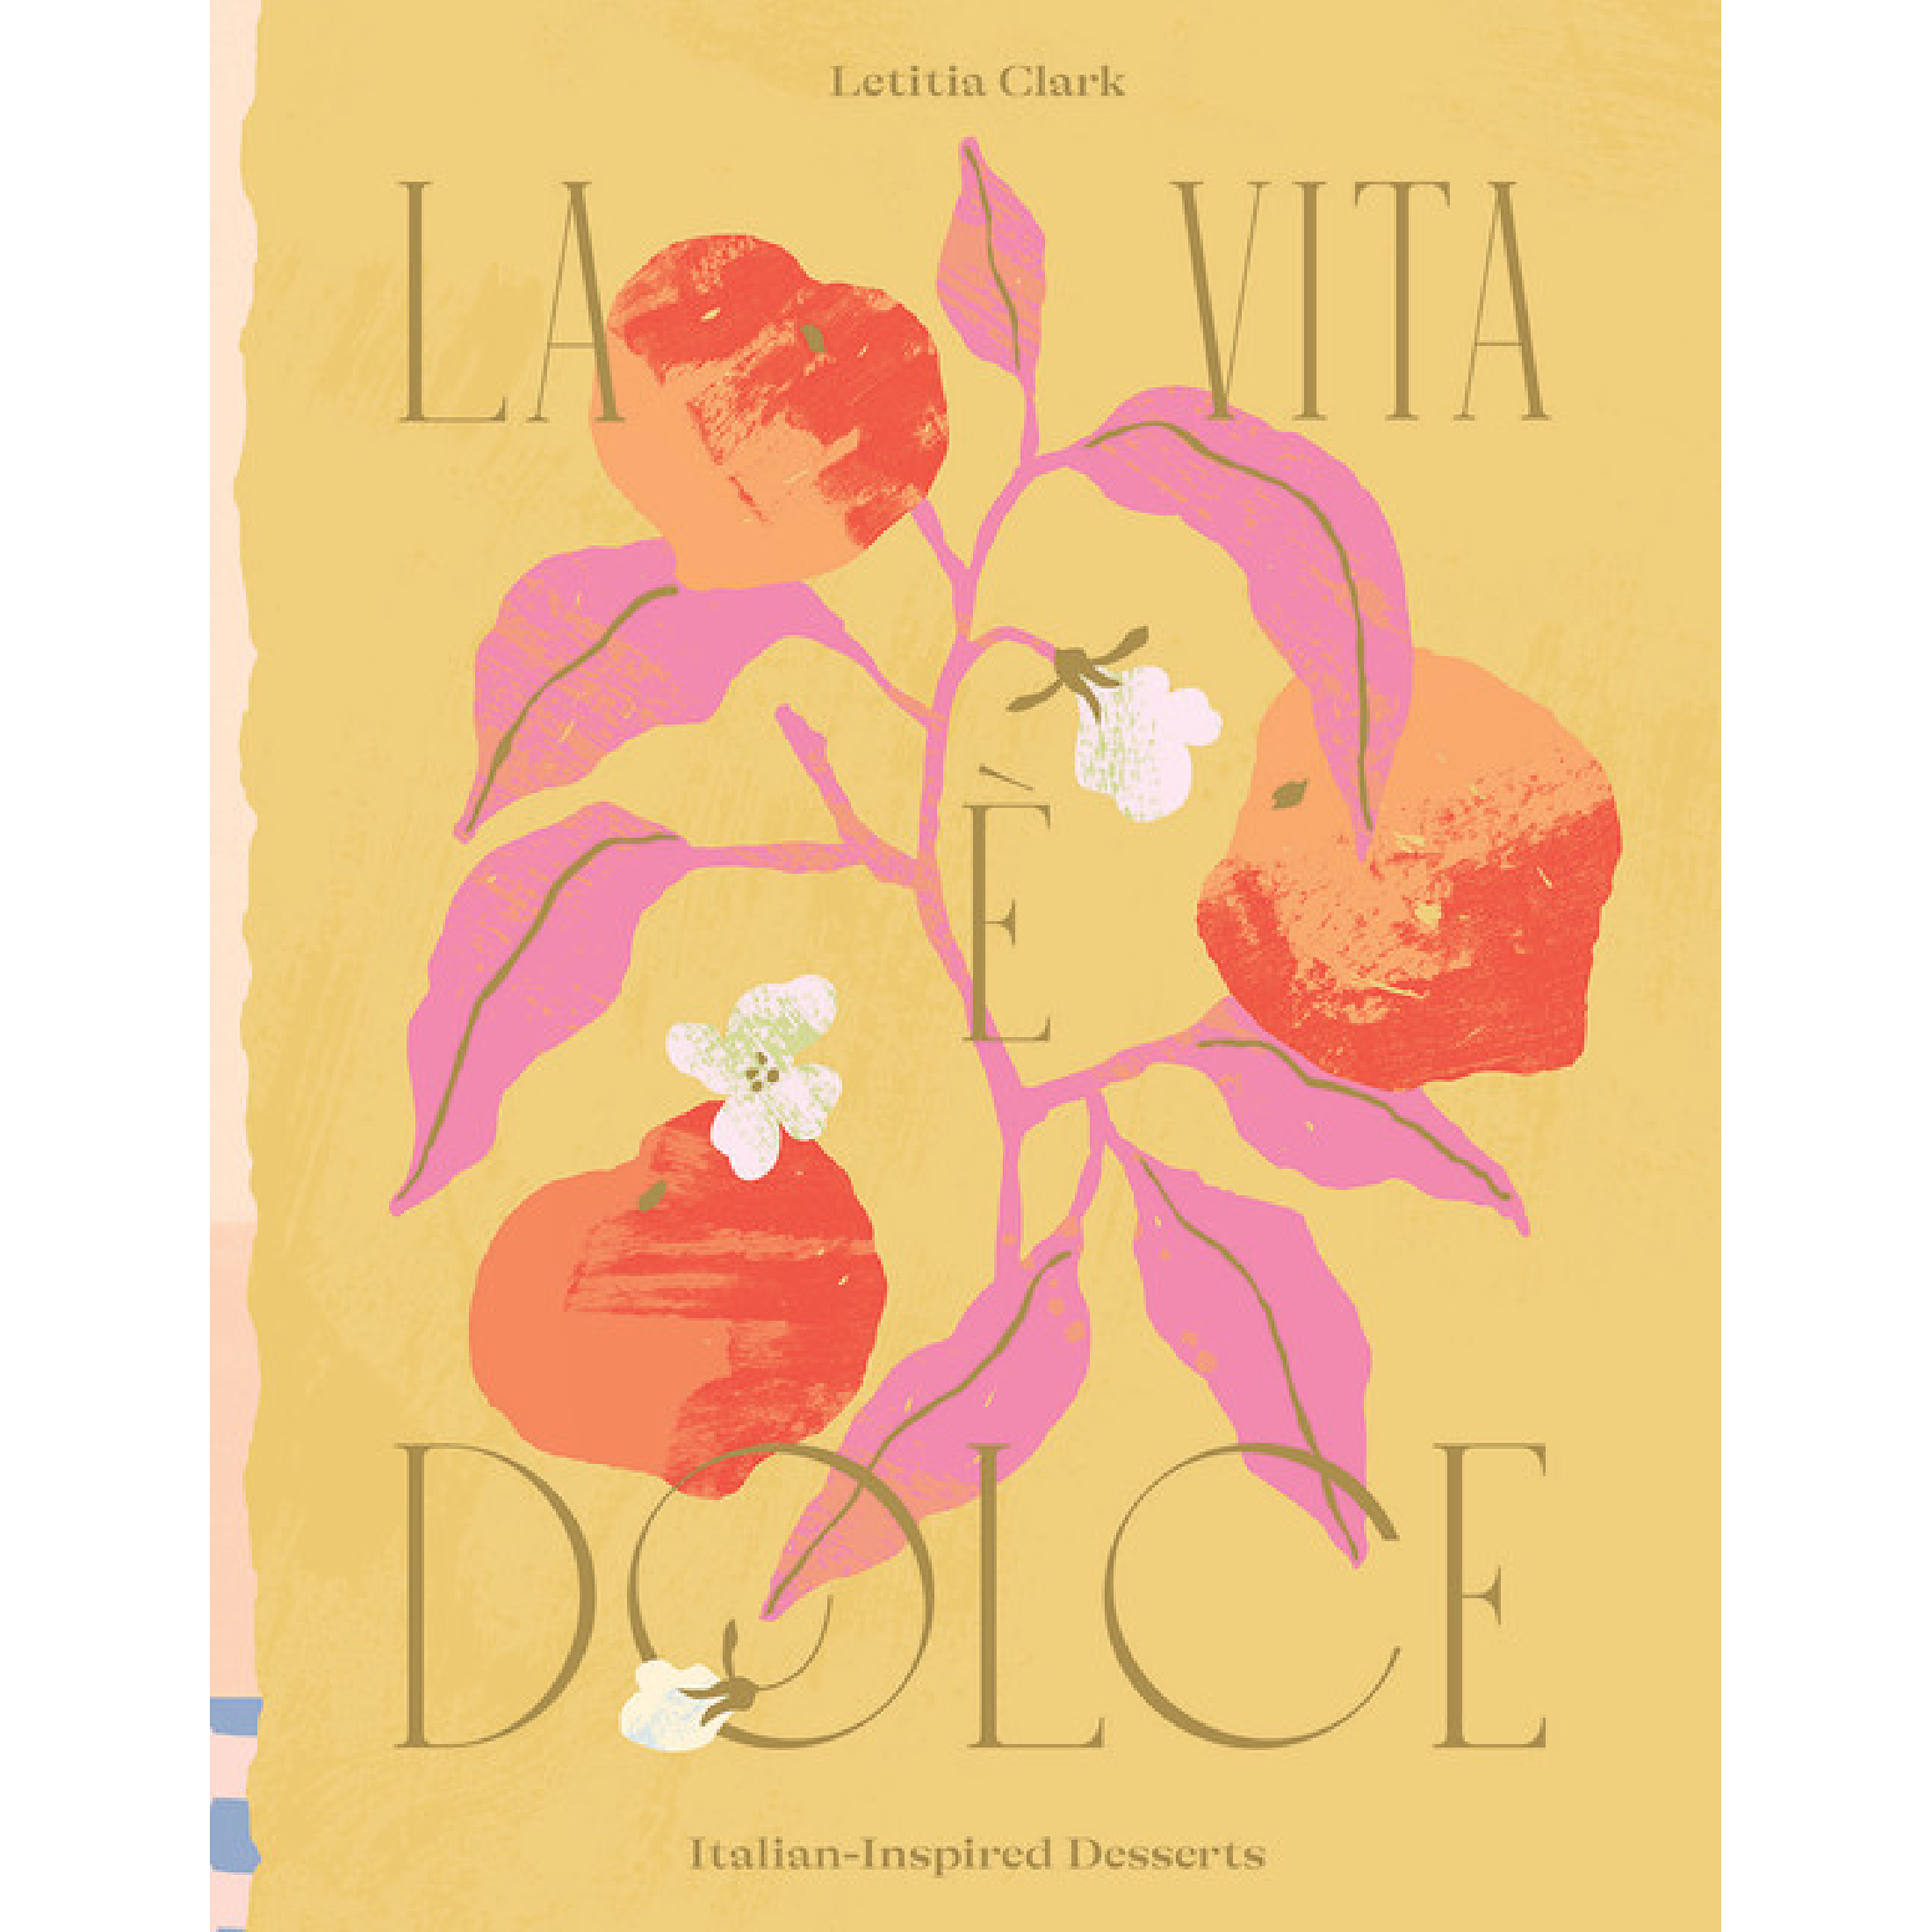 La Vita e Dolce: Italian-Inspired Desserts